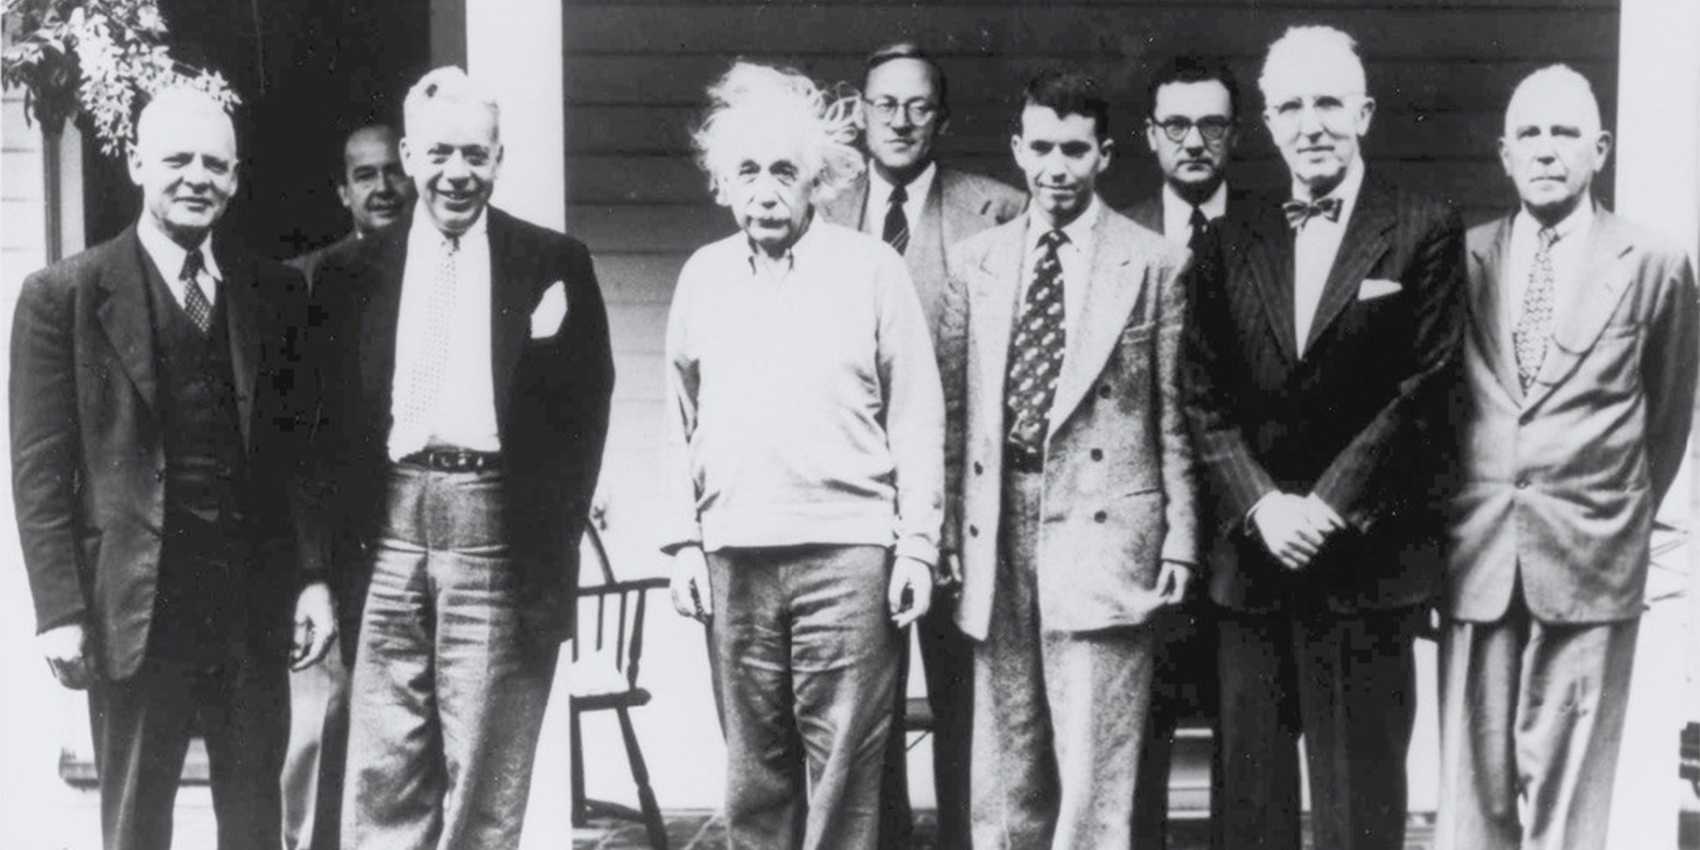 Altes schwarzweiss Foto einer Gruppe Männer, darunter Albert Einstein und John von Neumann.